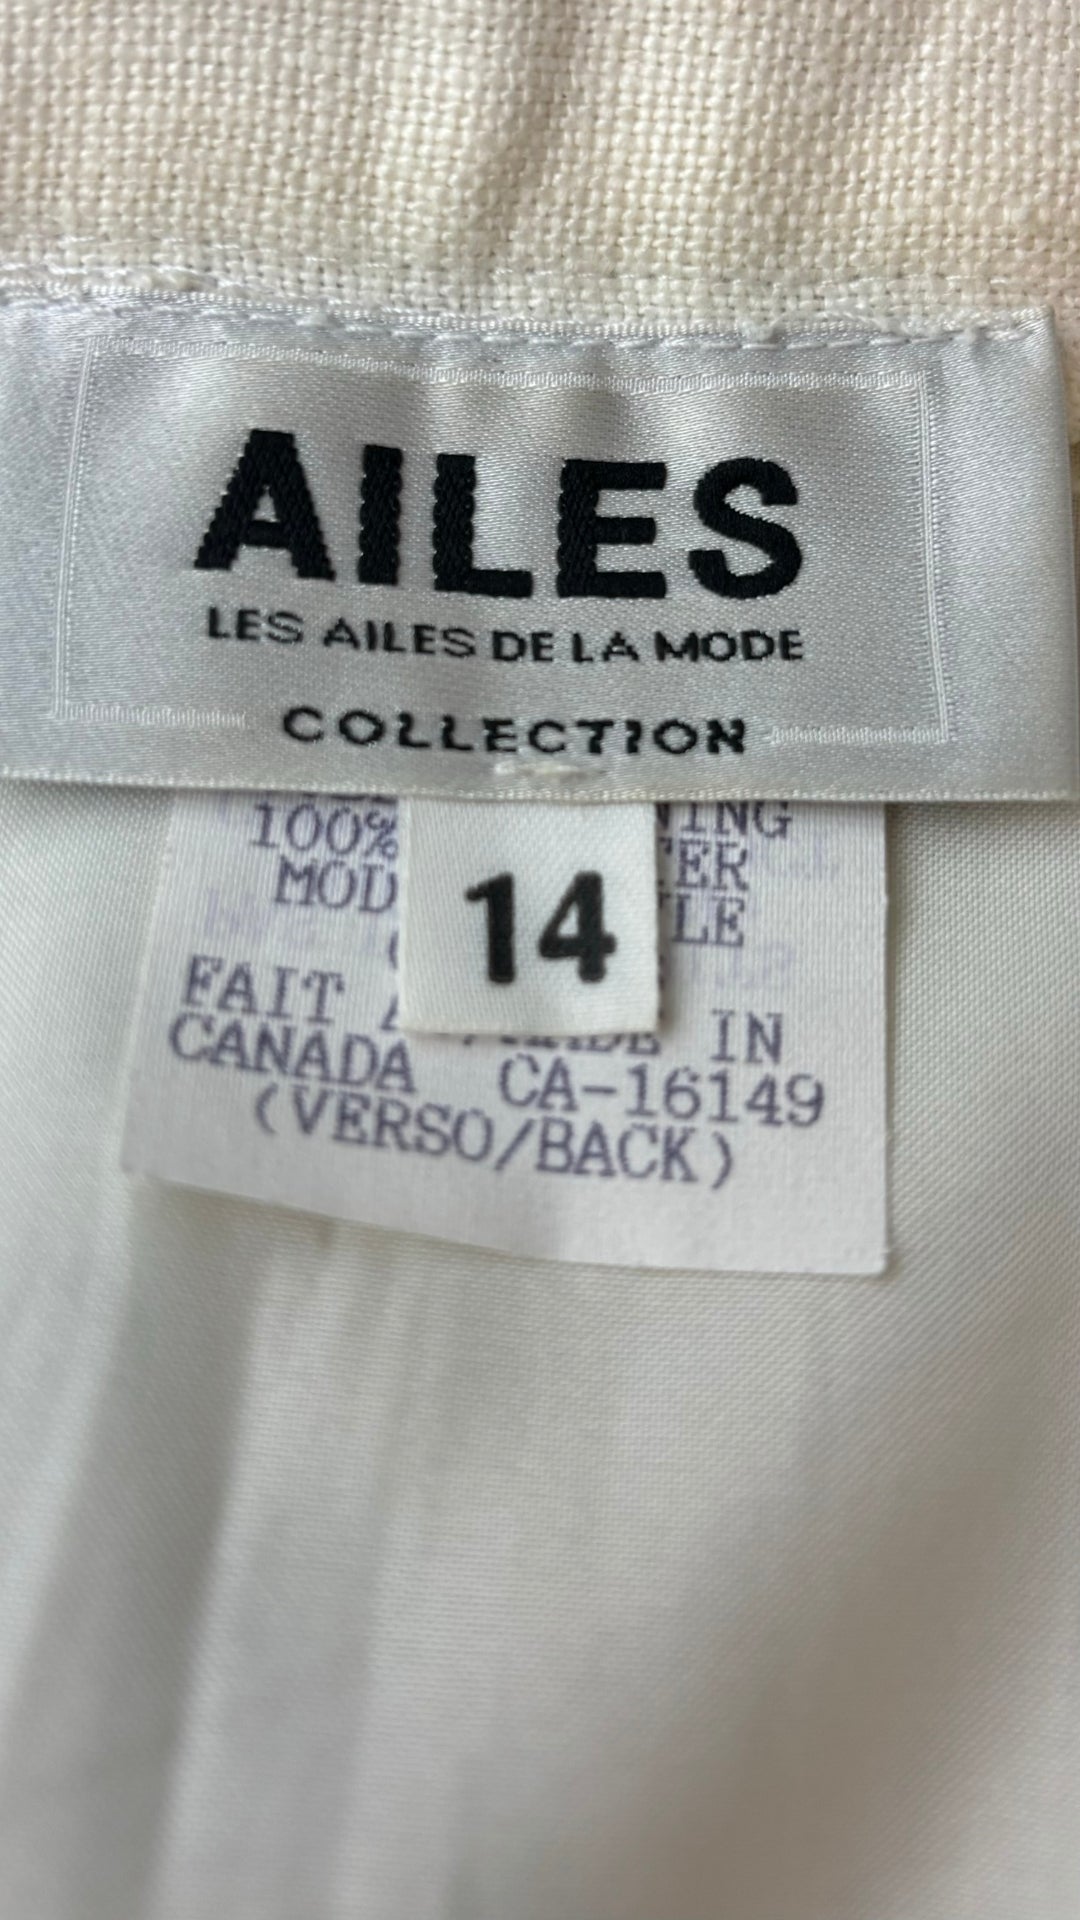 Jupe crème en lin Les Ailes de la Mode, taille 14 (l). Vue de l'étiquette de marque, taille et composition.